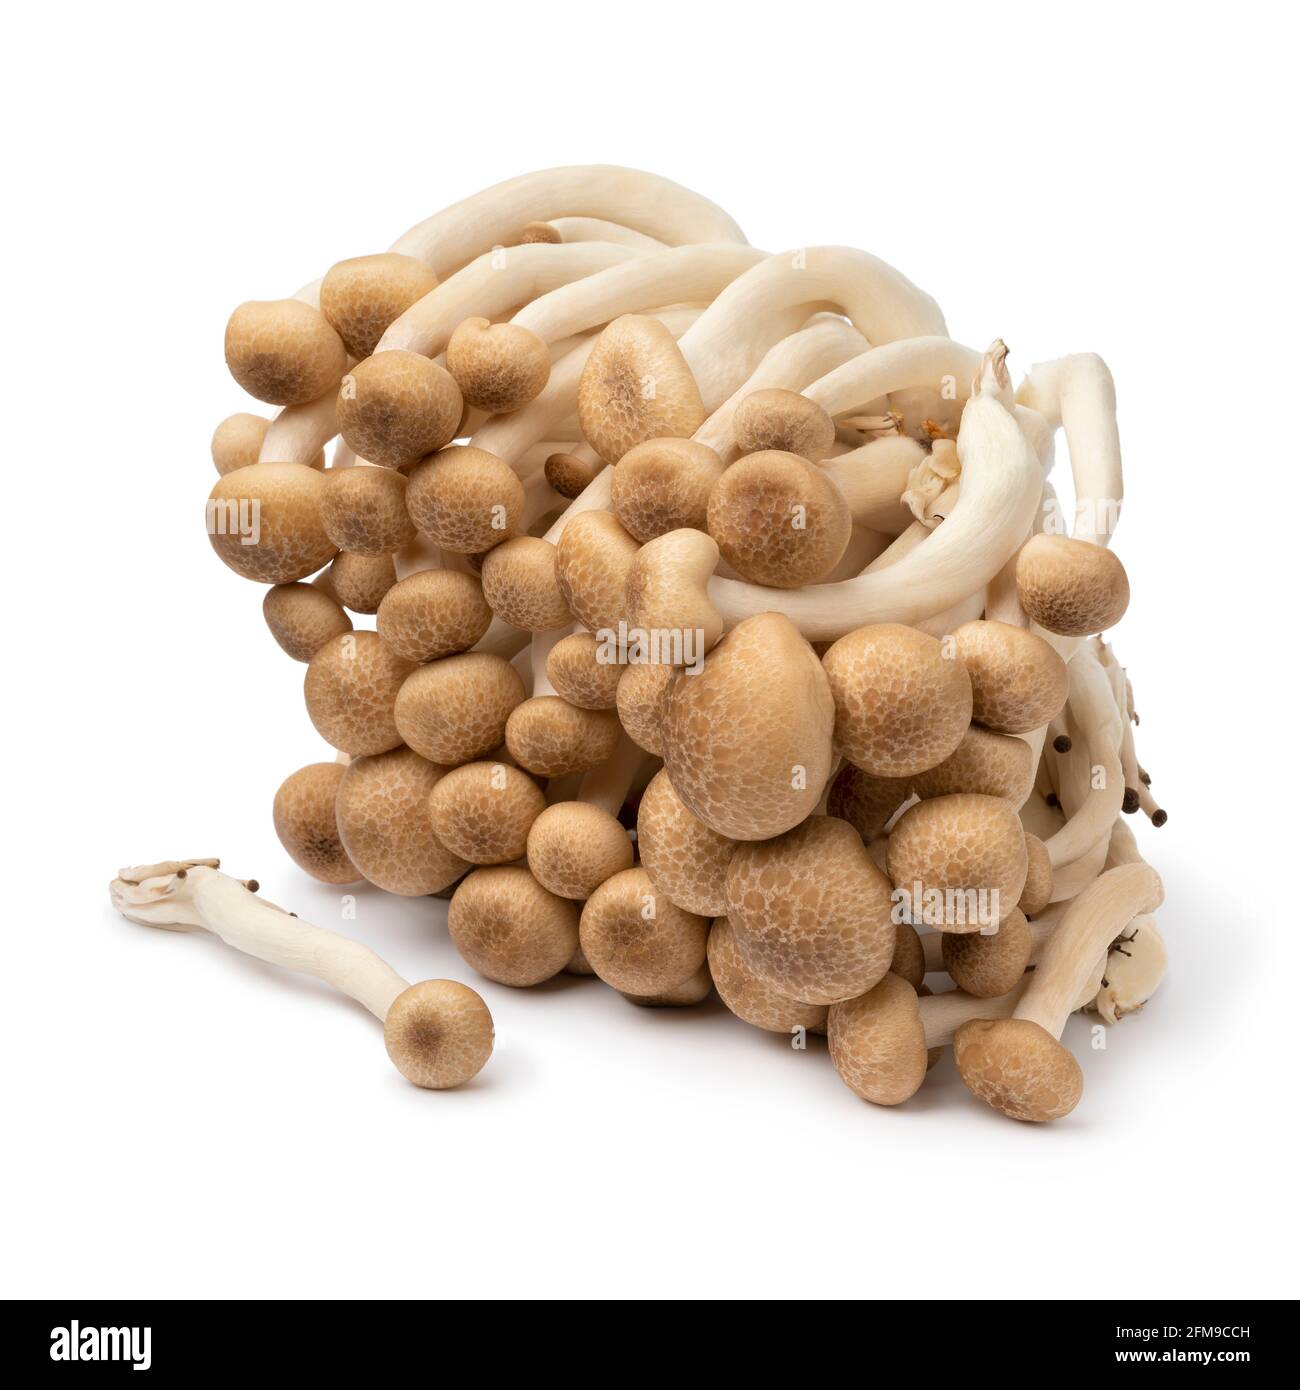 Bouquet de champignons shimeji asiatiques frais crus isolés sur fond blanc Banque D'Images